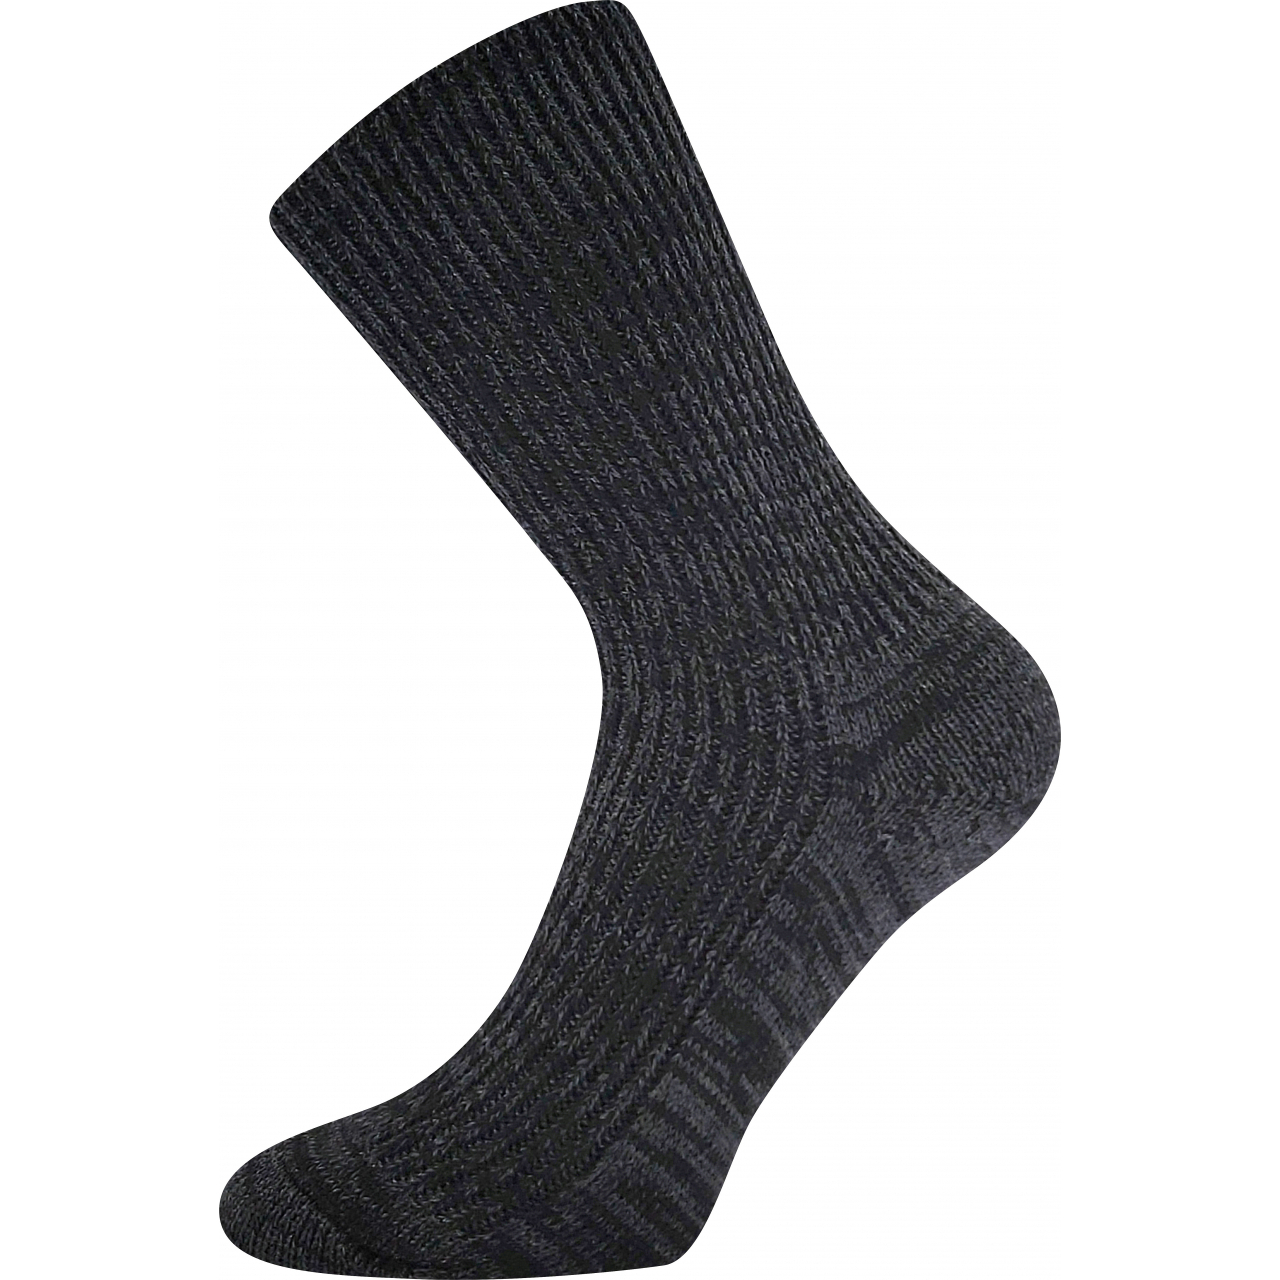 Ponožky unisex zimní Boma Říp - černé, 43-45